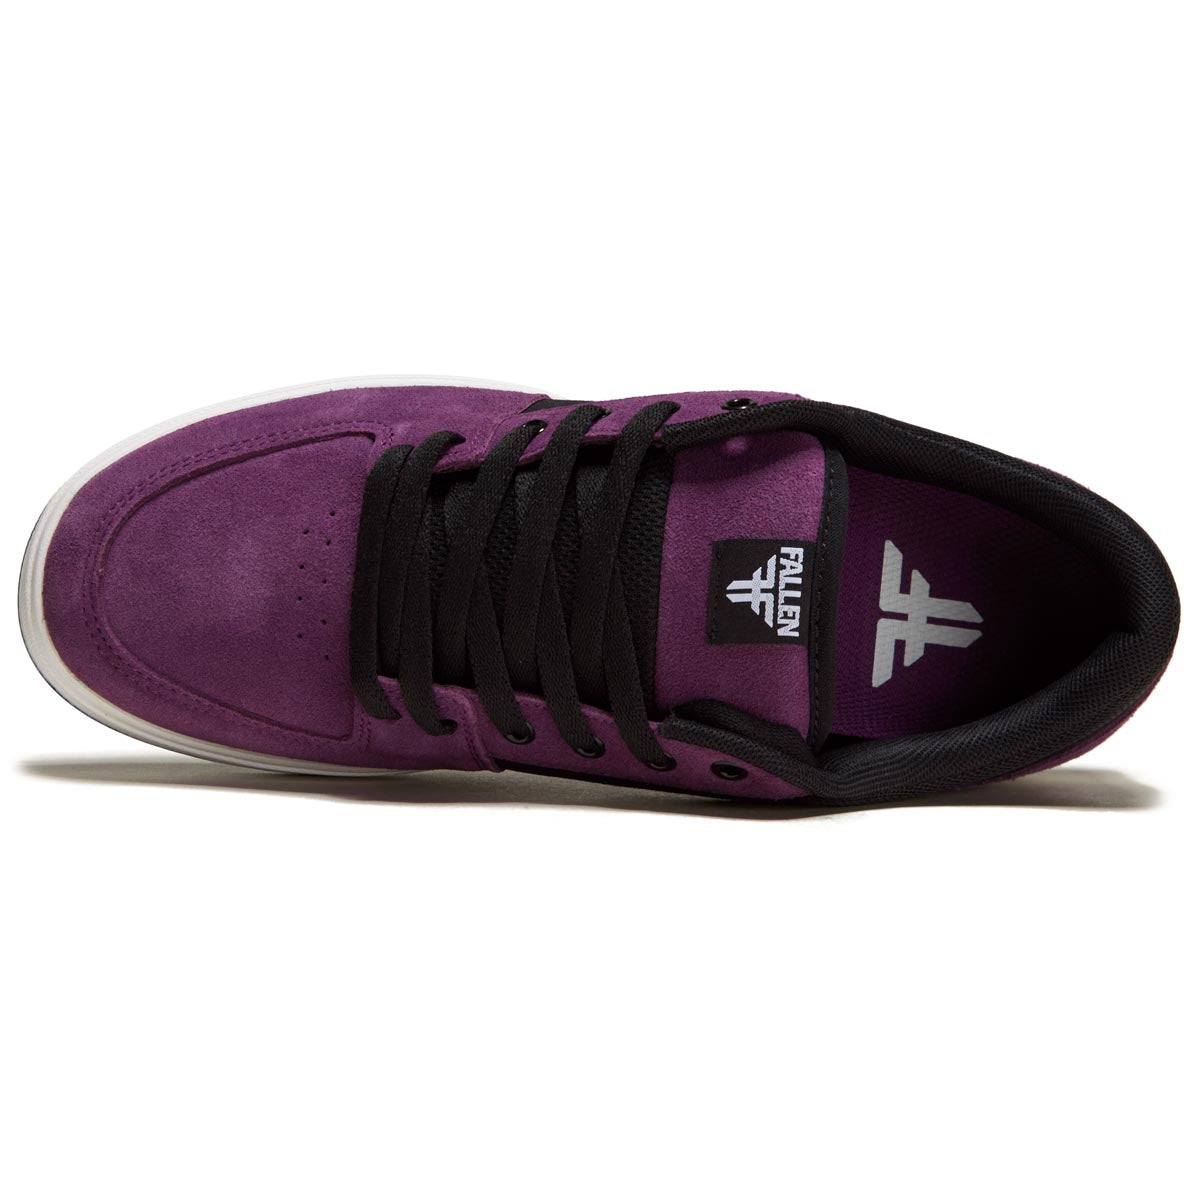 Fallen Patriot Shoes - Purple/Black image 3